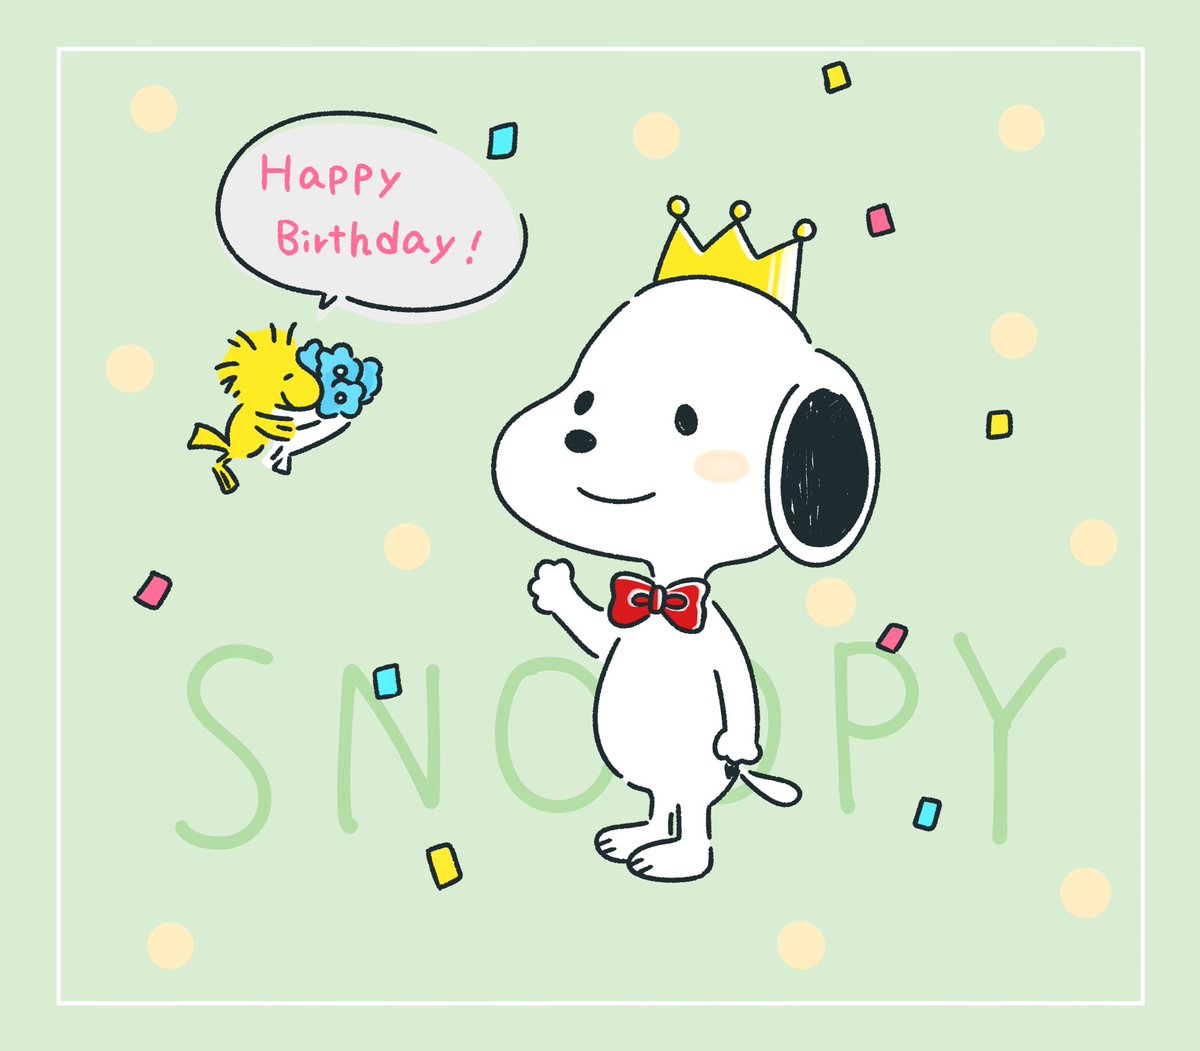 鳥 早希 V Twitter スヌーピーが好きで 文房具集めてたなぁ スヌーピー Snoopy Snoopy イラスト 誕生日 ハッピーバースデー Happybirthday らくがき